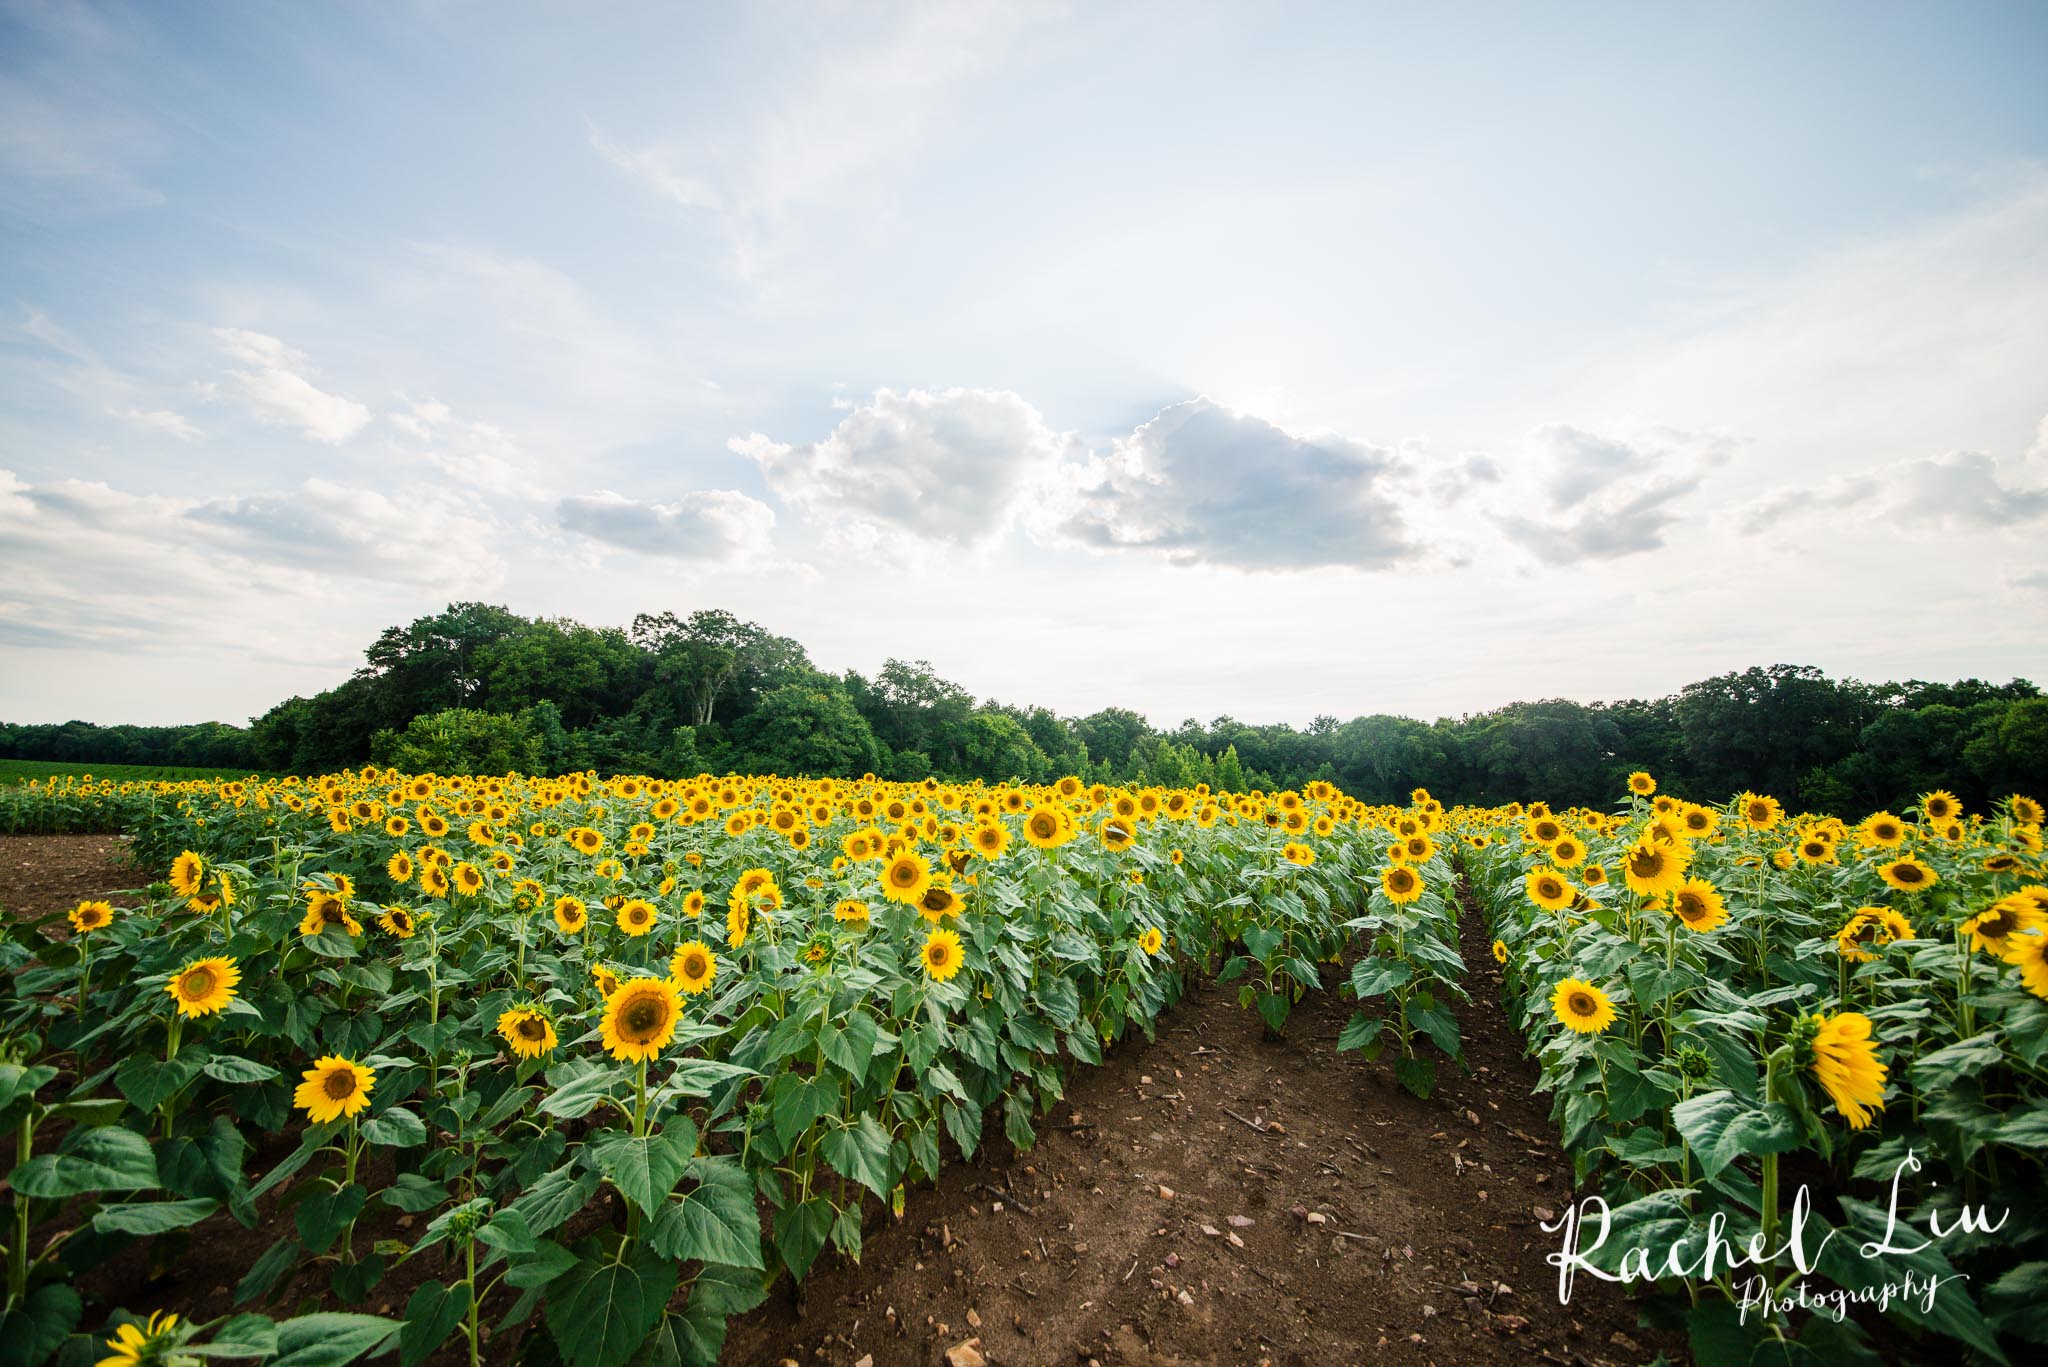 I Found My Sunflower Fields – Rachel Liu Photography